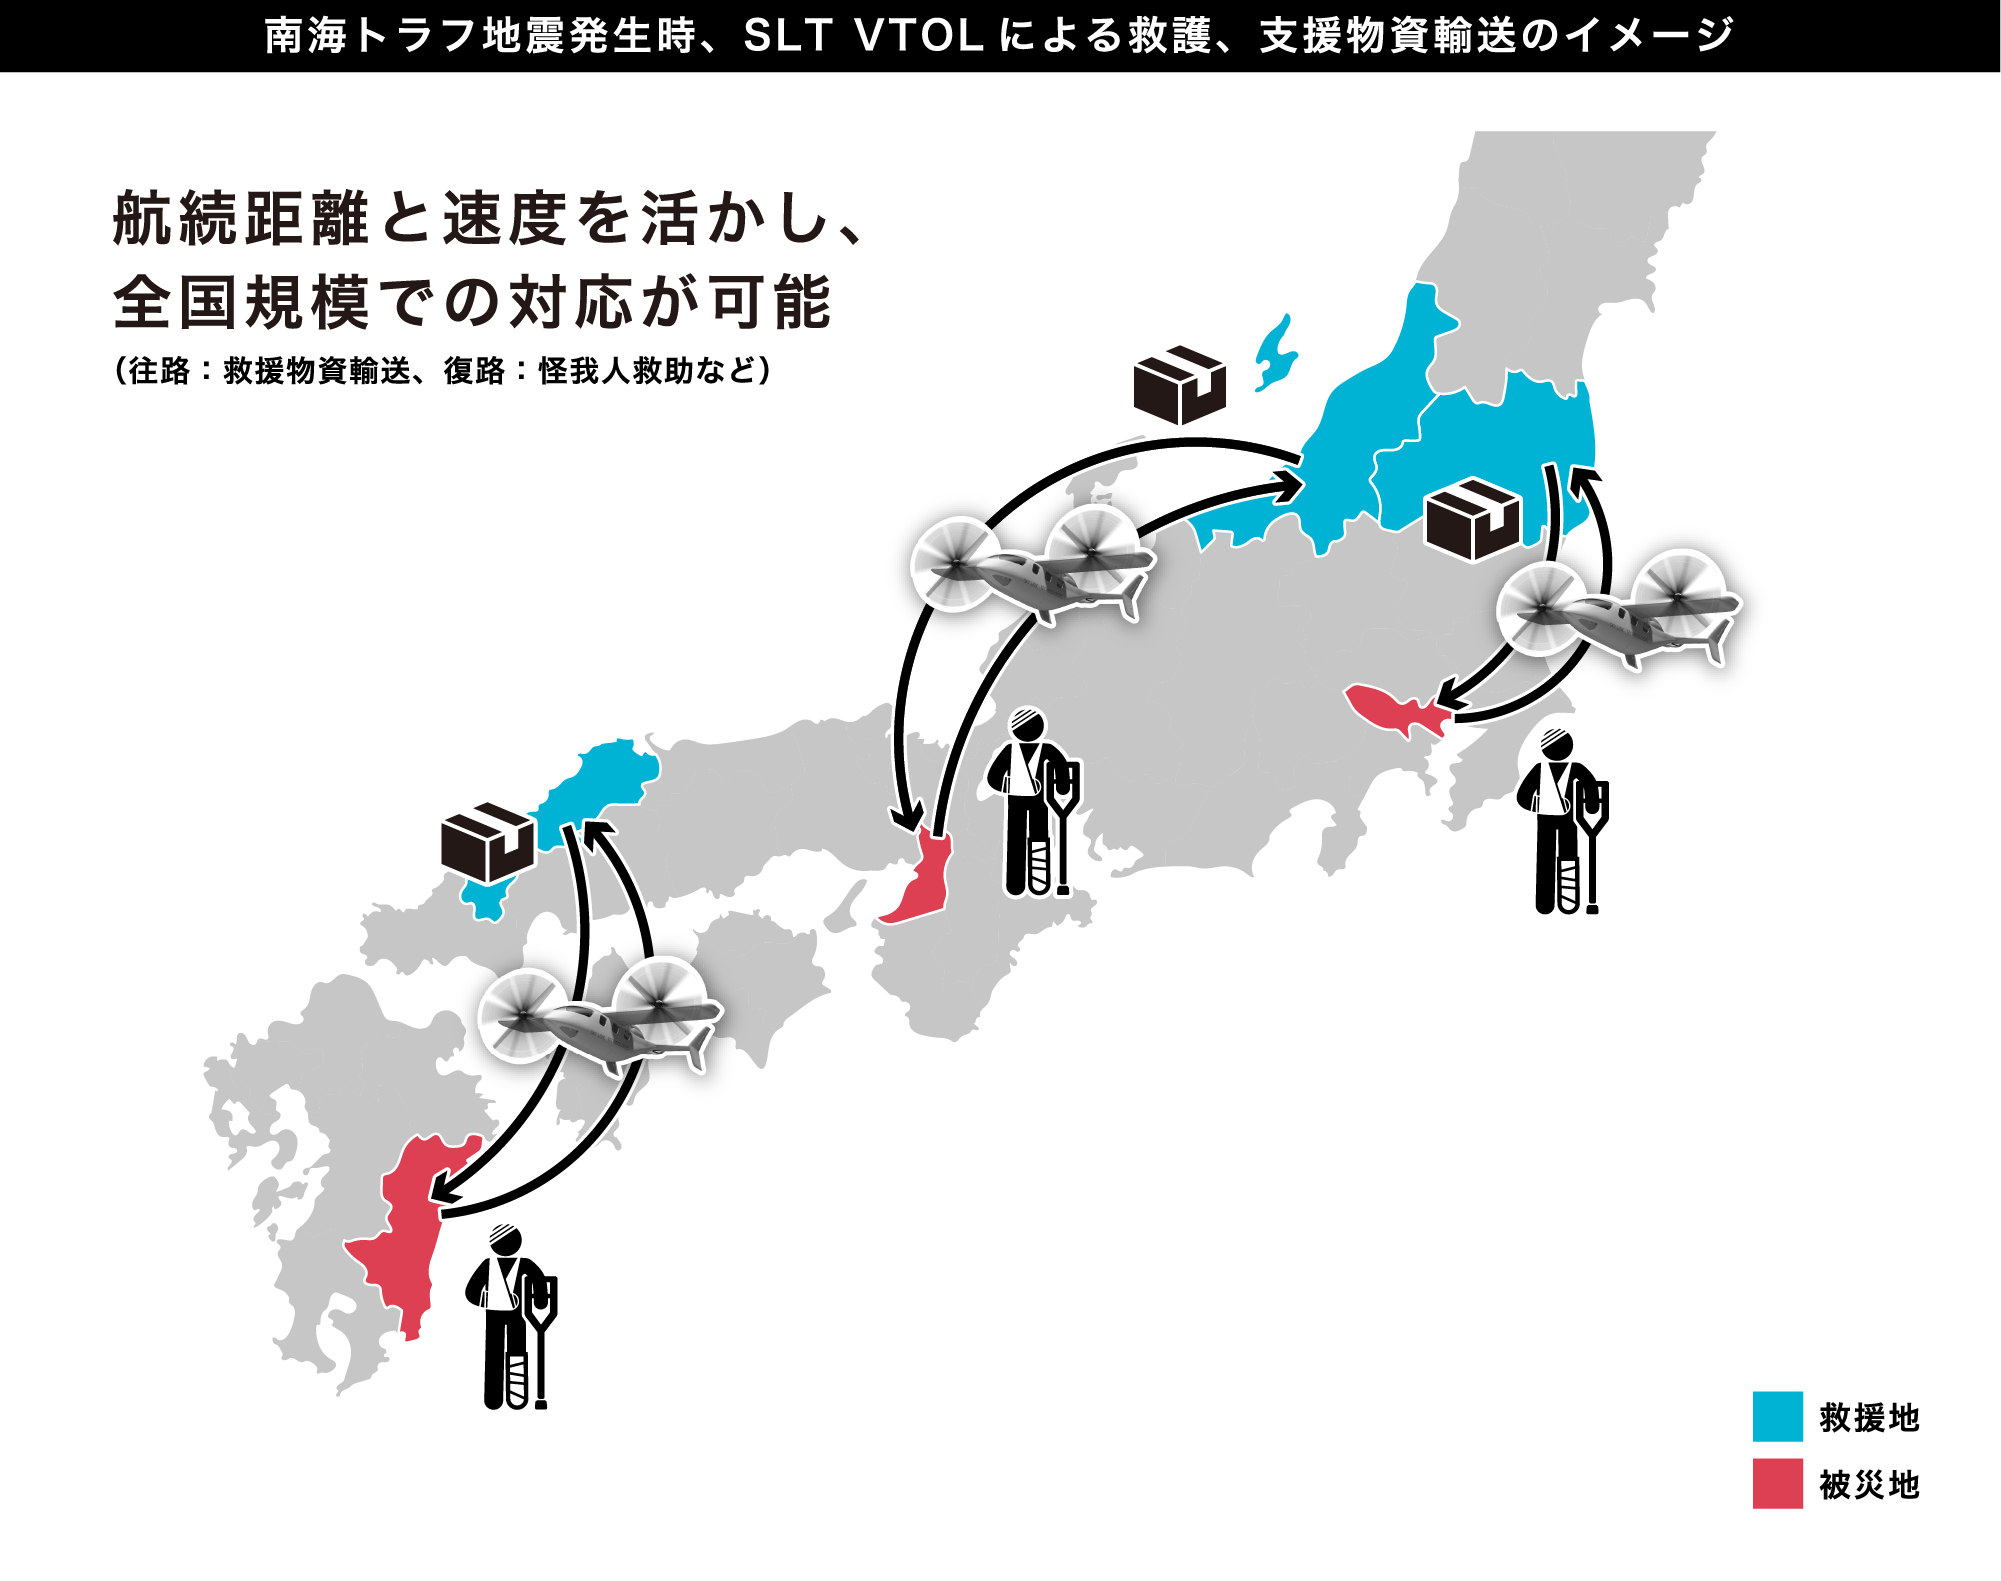 東京→広島、東京→函館を１時間で移動できます。